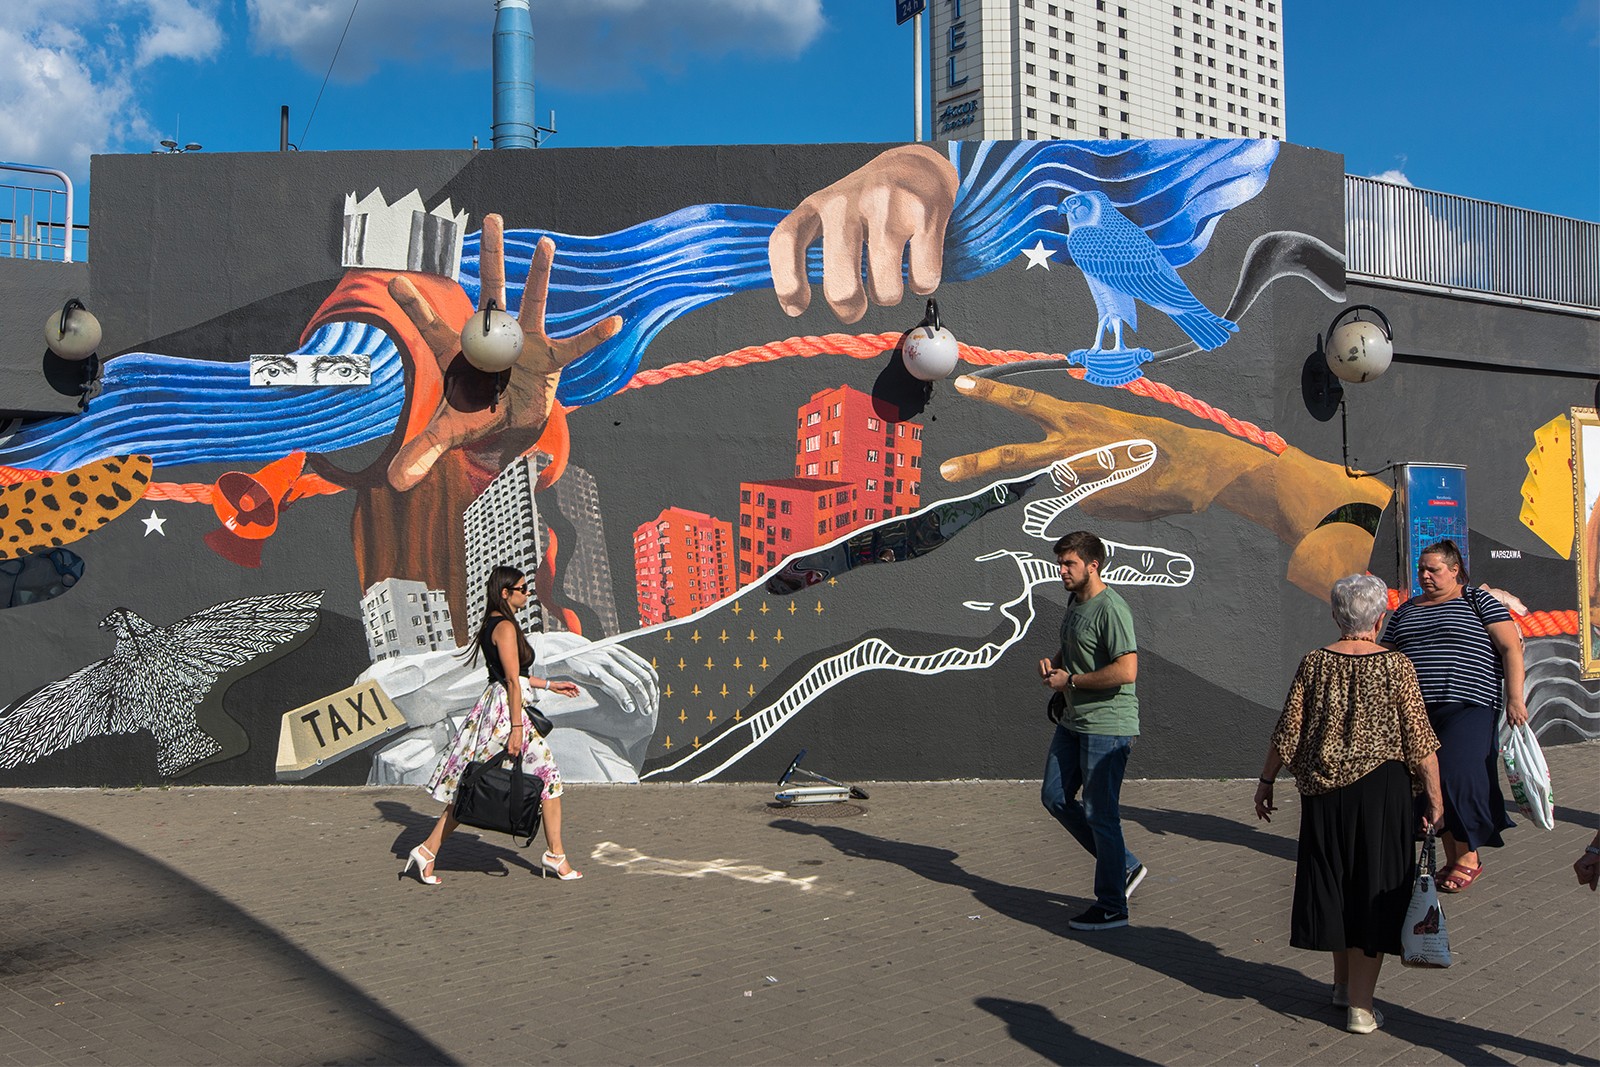 Mural artystyczny w centrum Warszawy zaprojektowany prze Barrakuz.jpg | #ORANGEZBLIZA | Portfolio